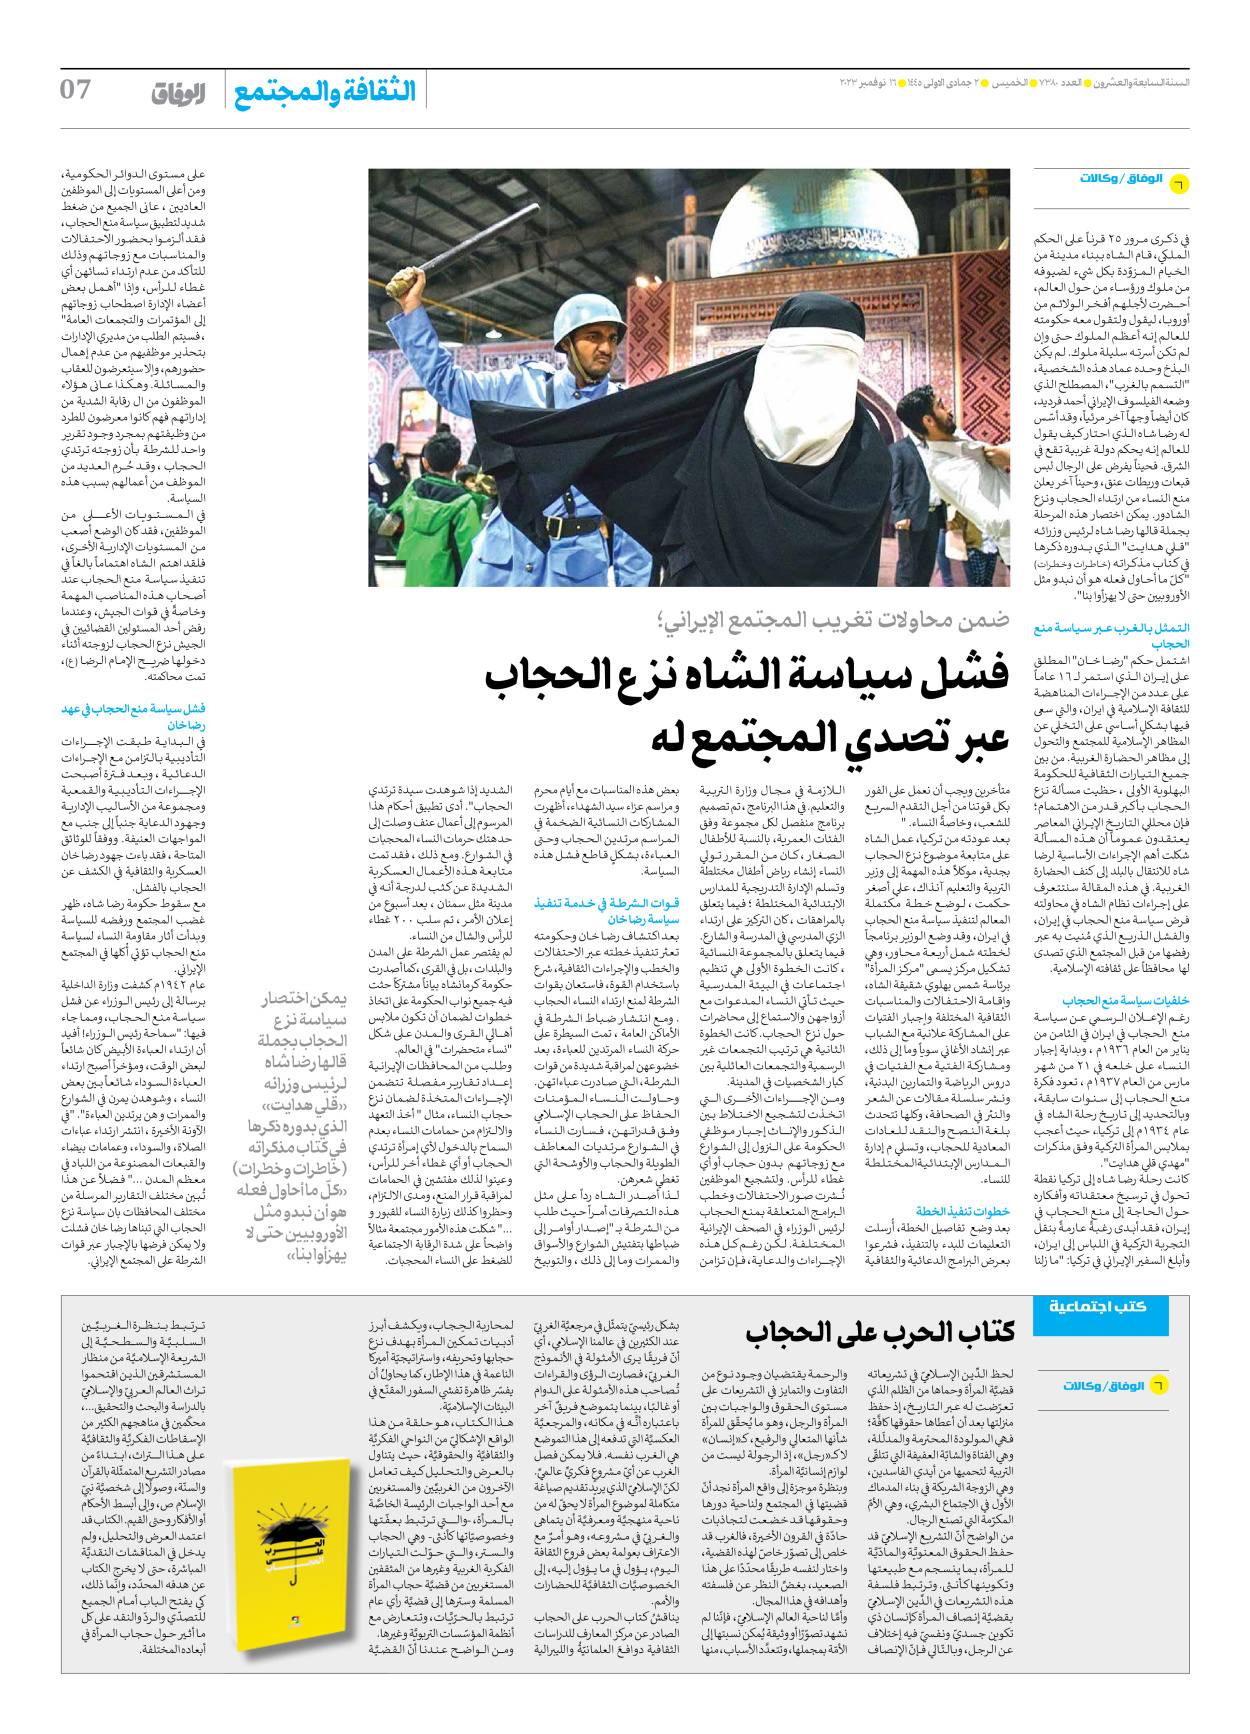 صحیفة ایران الدولیة الوفاق - العدد سبعة آلاف وثلاثمائة وثمانون - ١٦ نوفمبر ٢٠٢٣ - الصفحة ۷